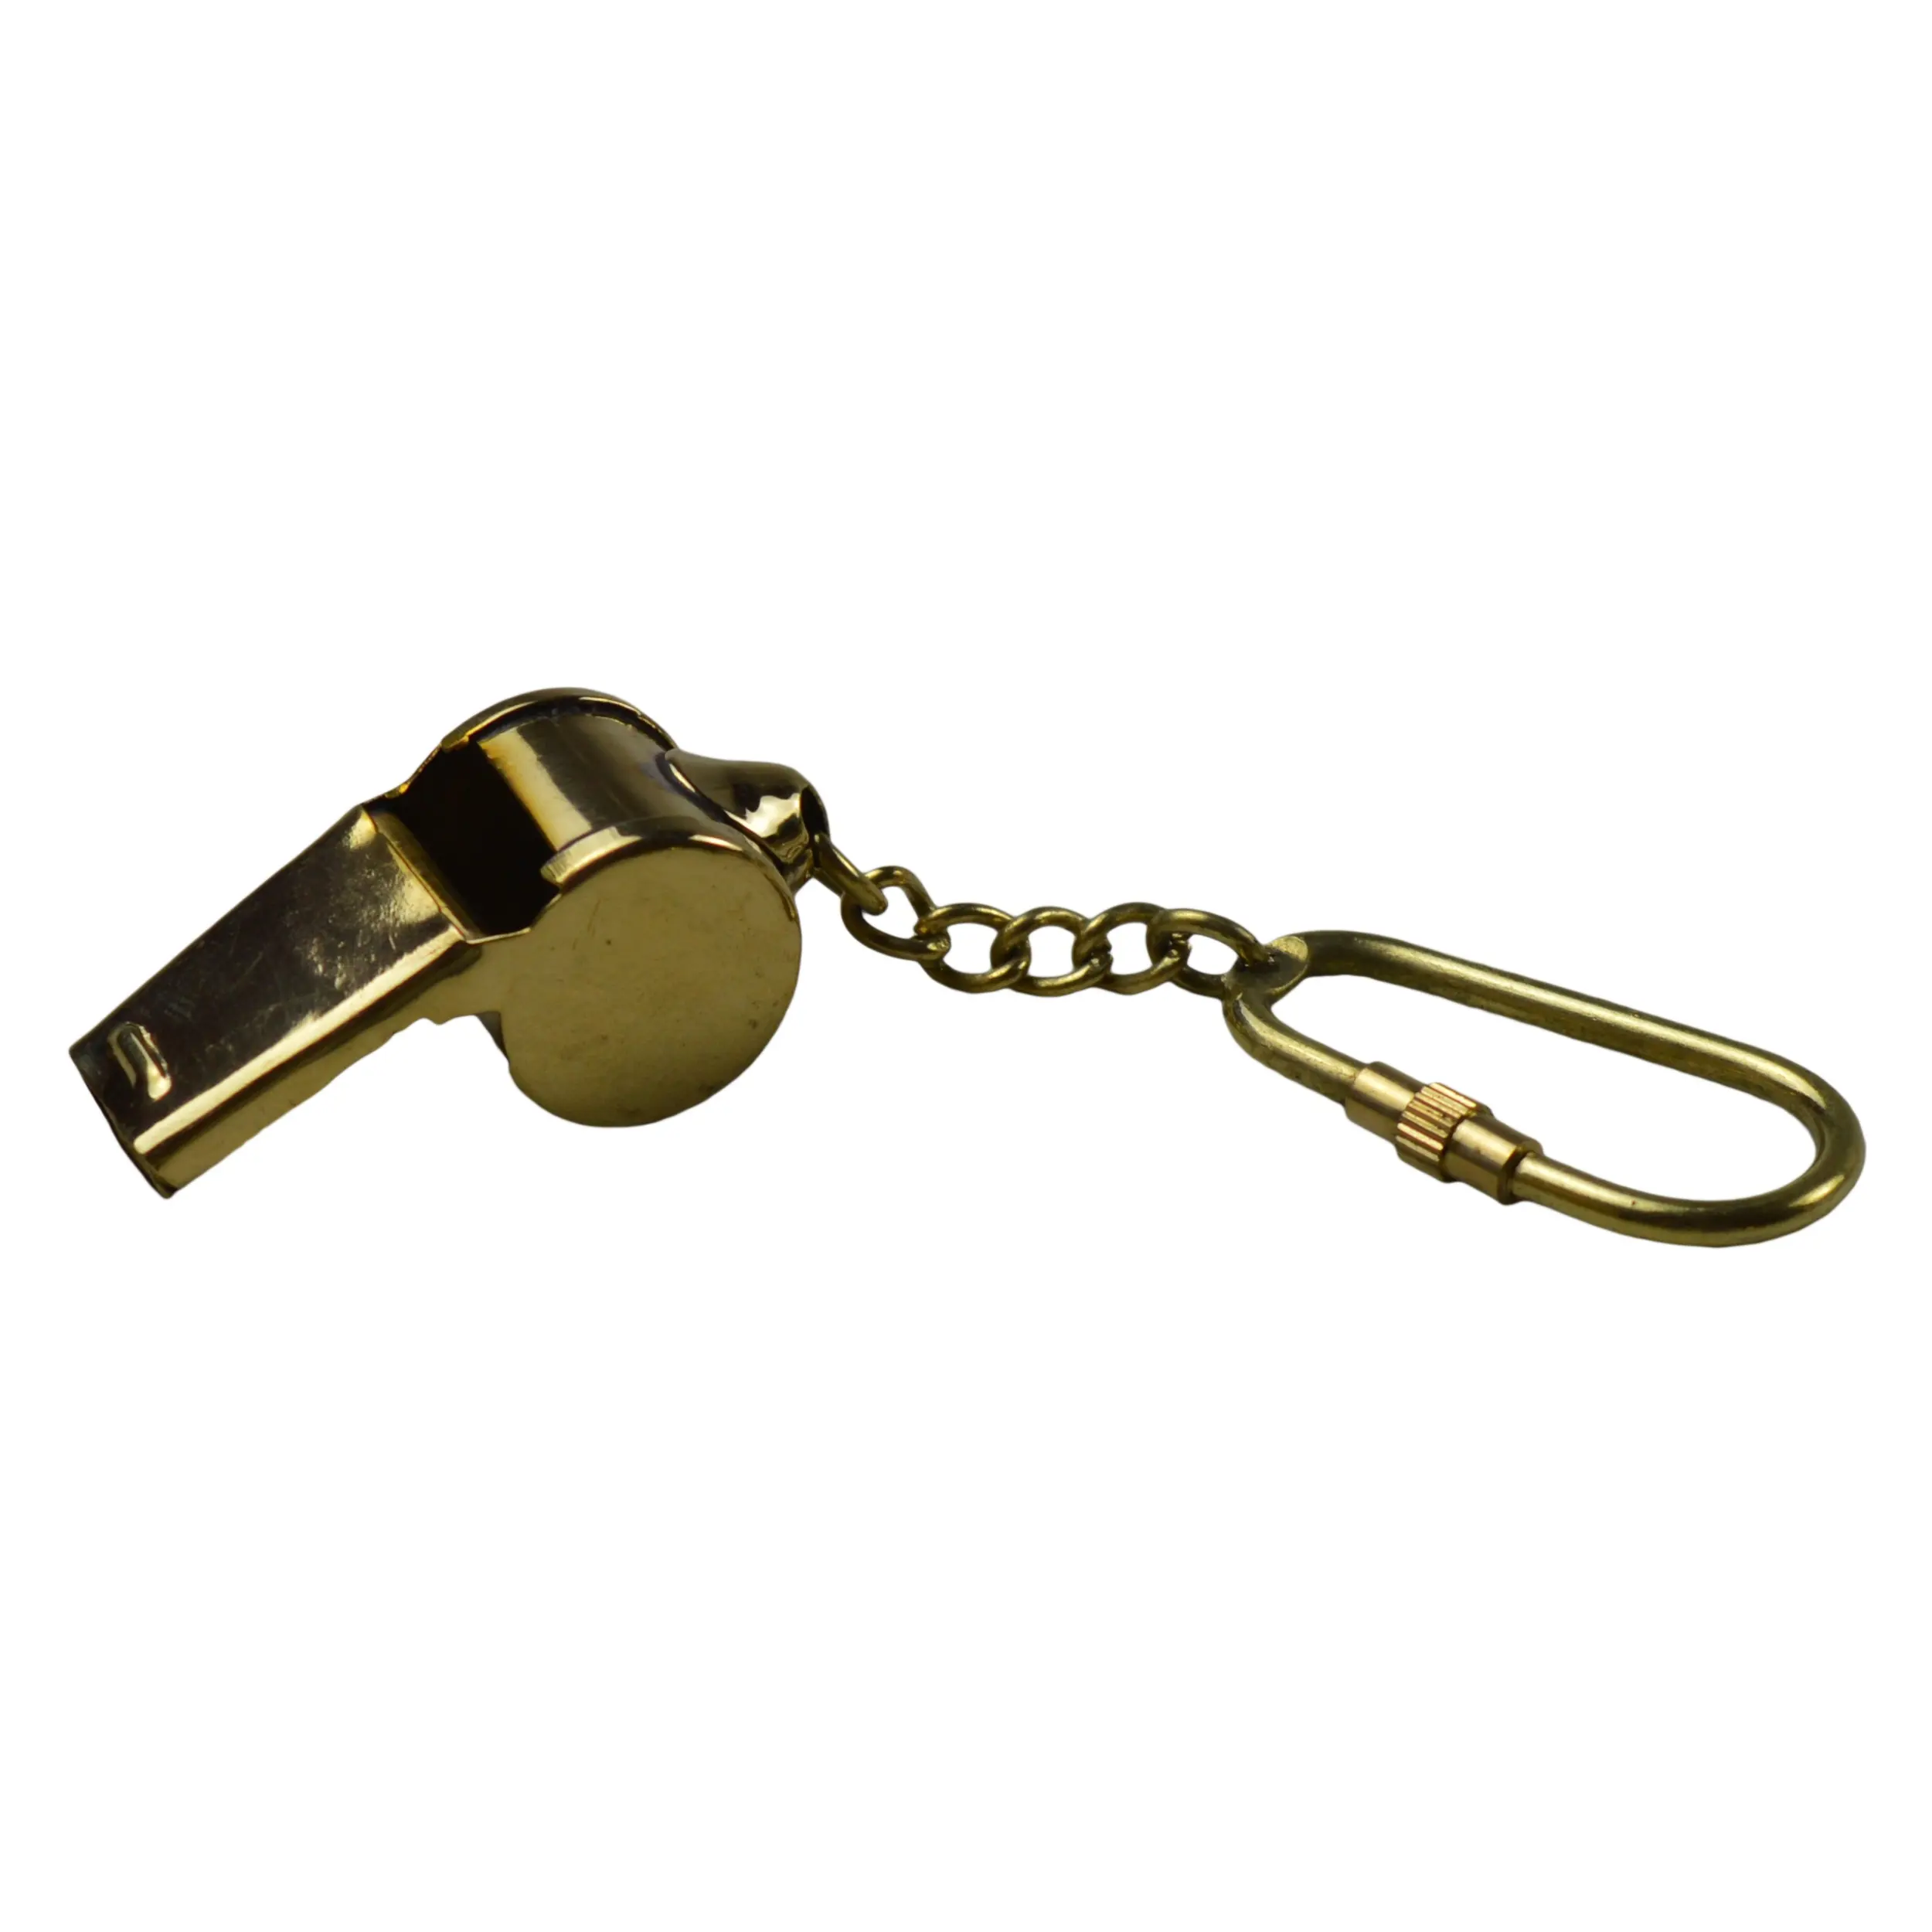 Porte-clés en métal, finition colorée or, nouveau Design, décoratif, porte-clé avec Design en laiton, porte-clés en forme de sifflet, meilleure conception